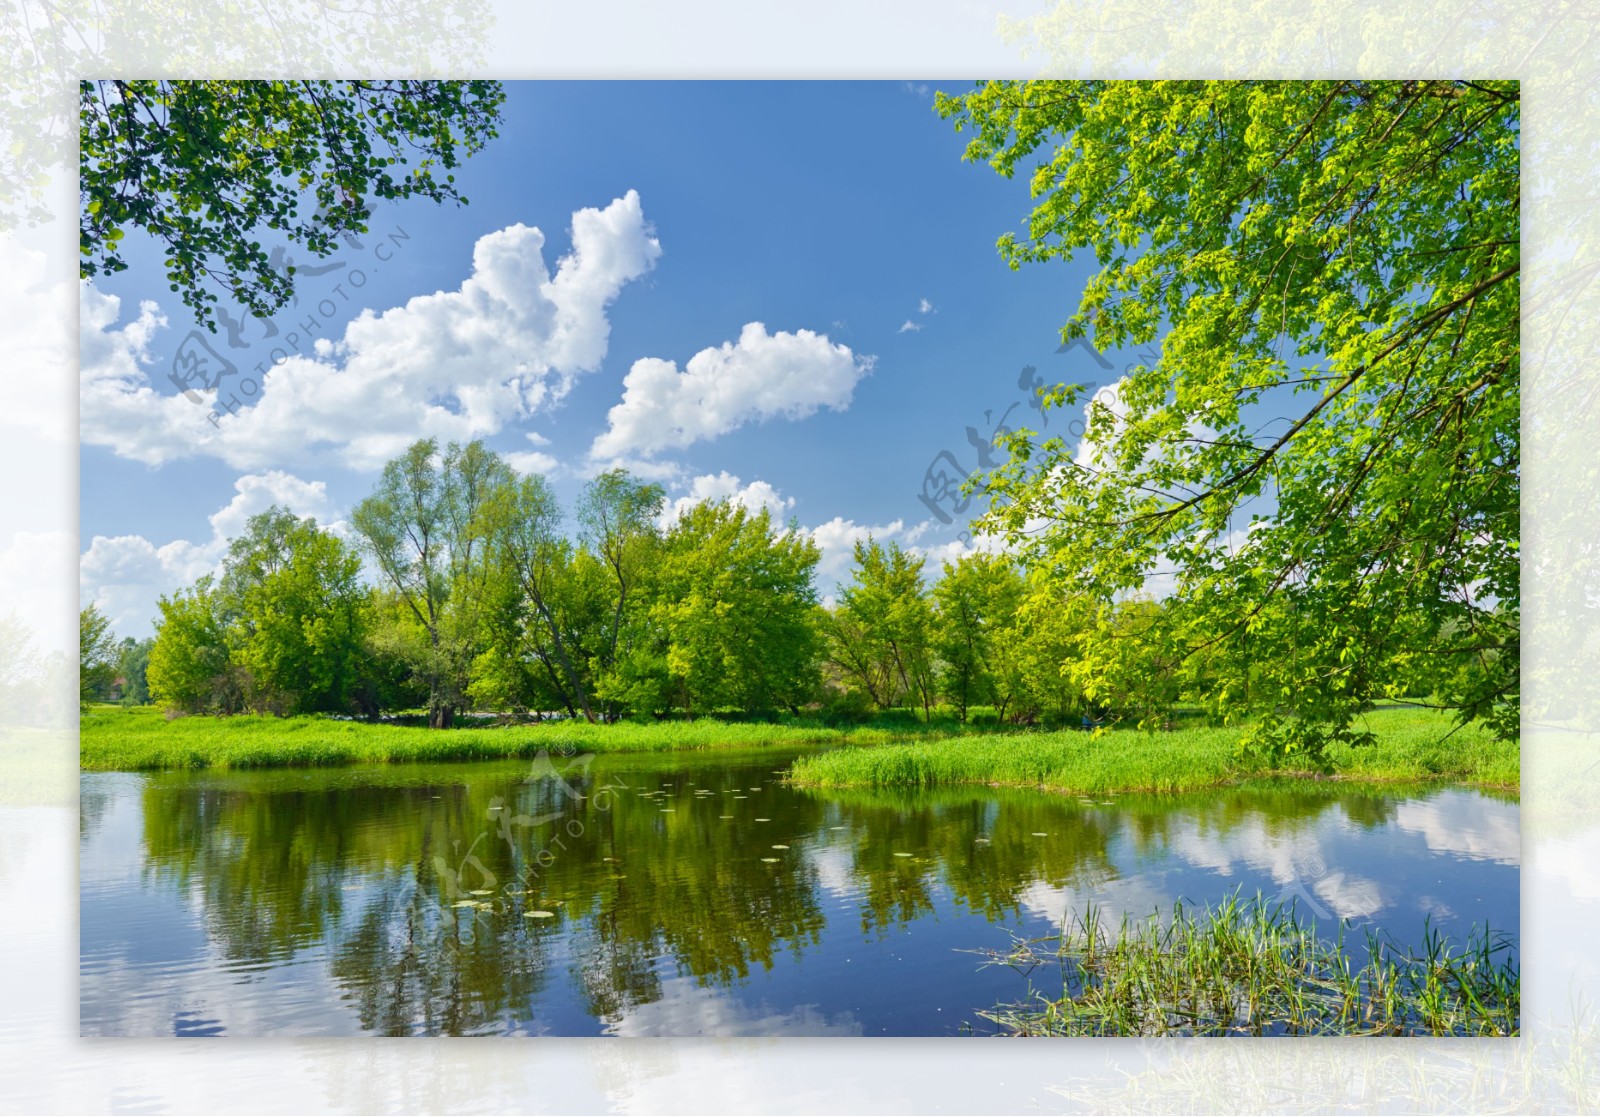 蓝天白云与湖泊风景图片